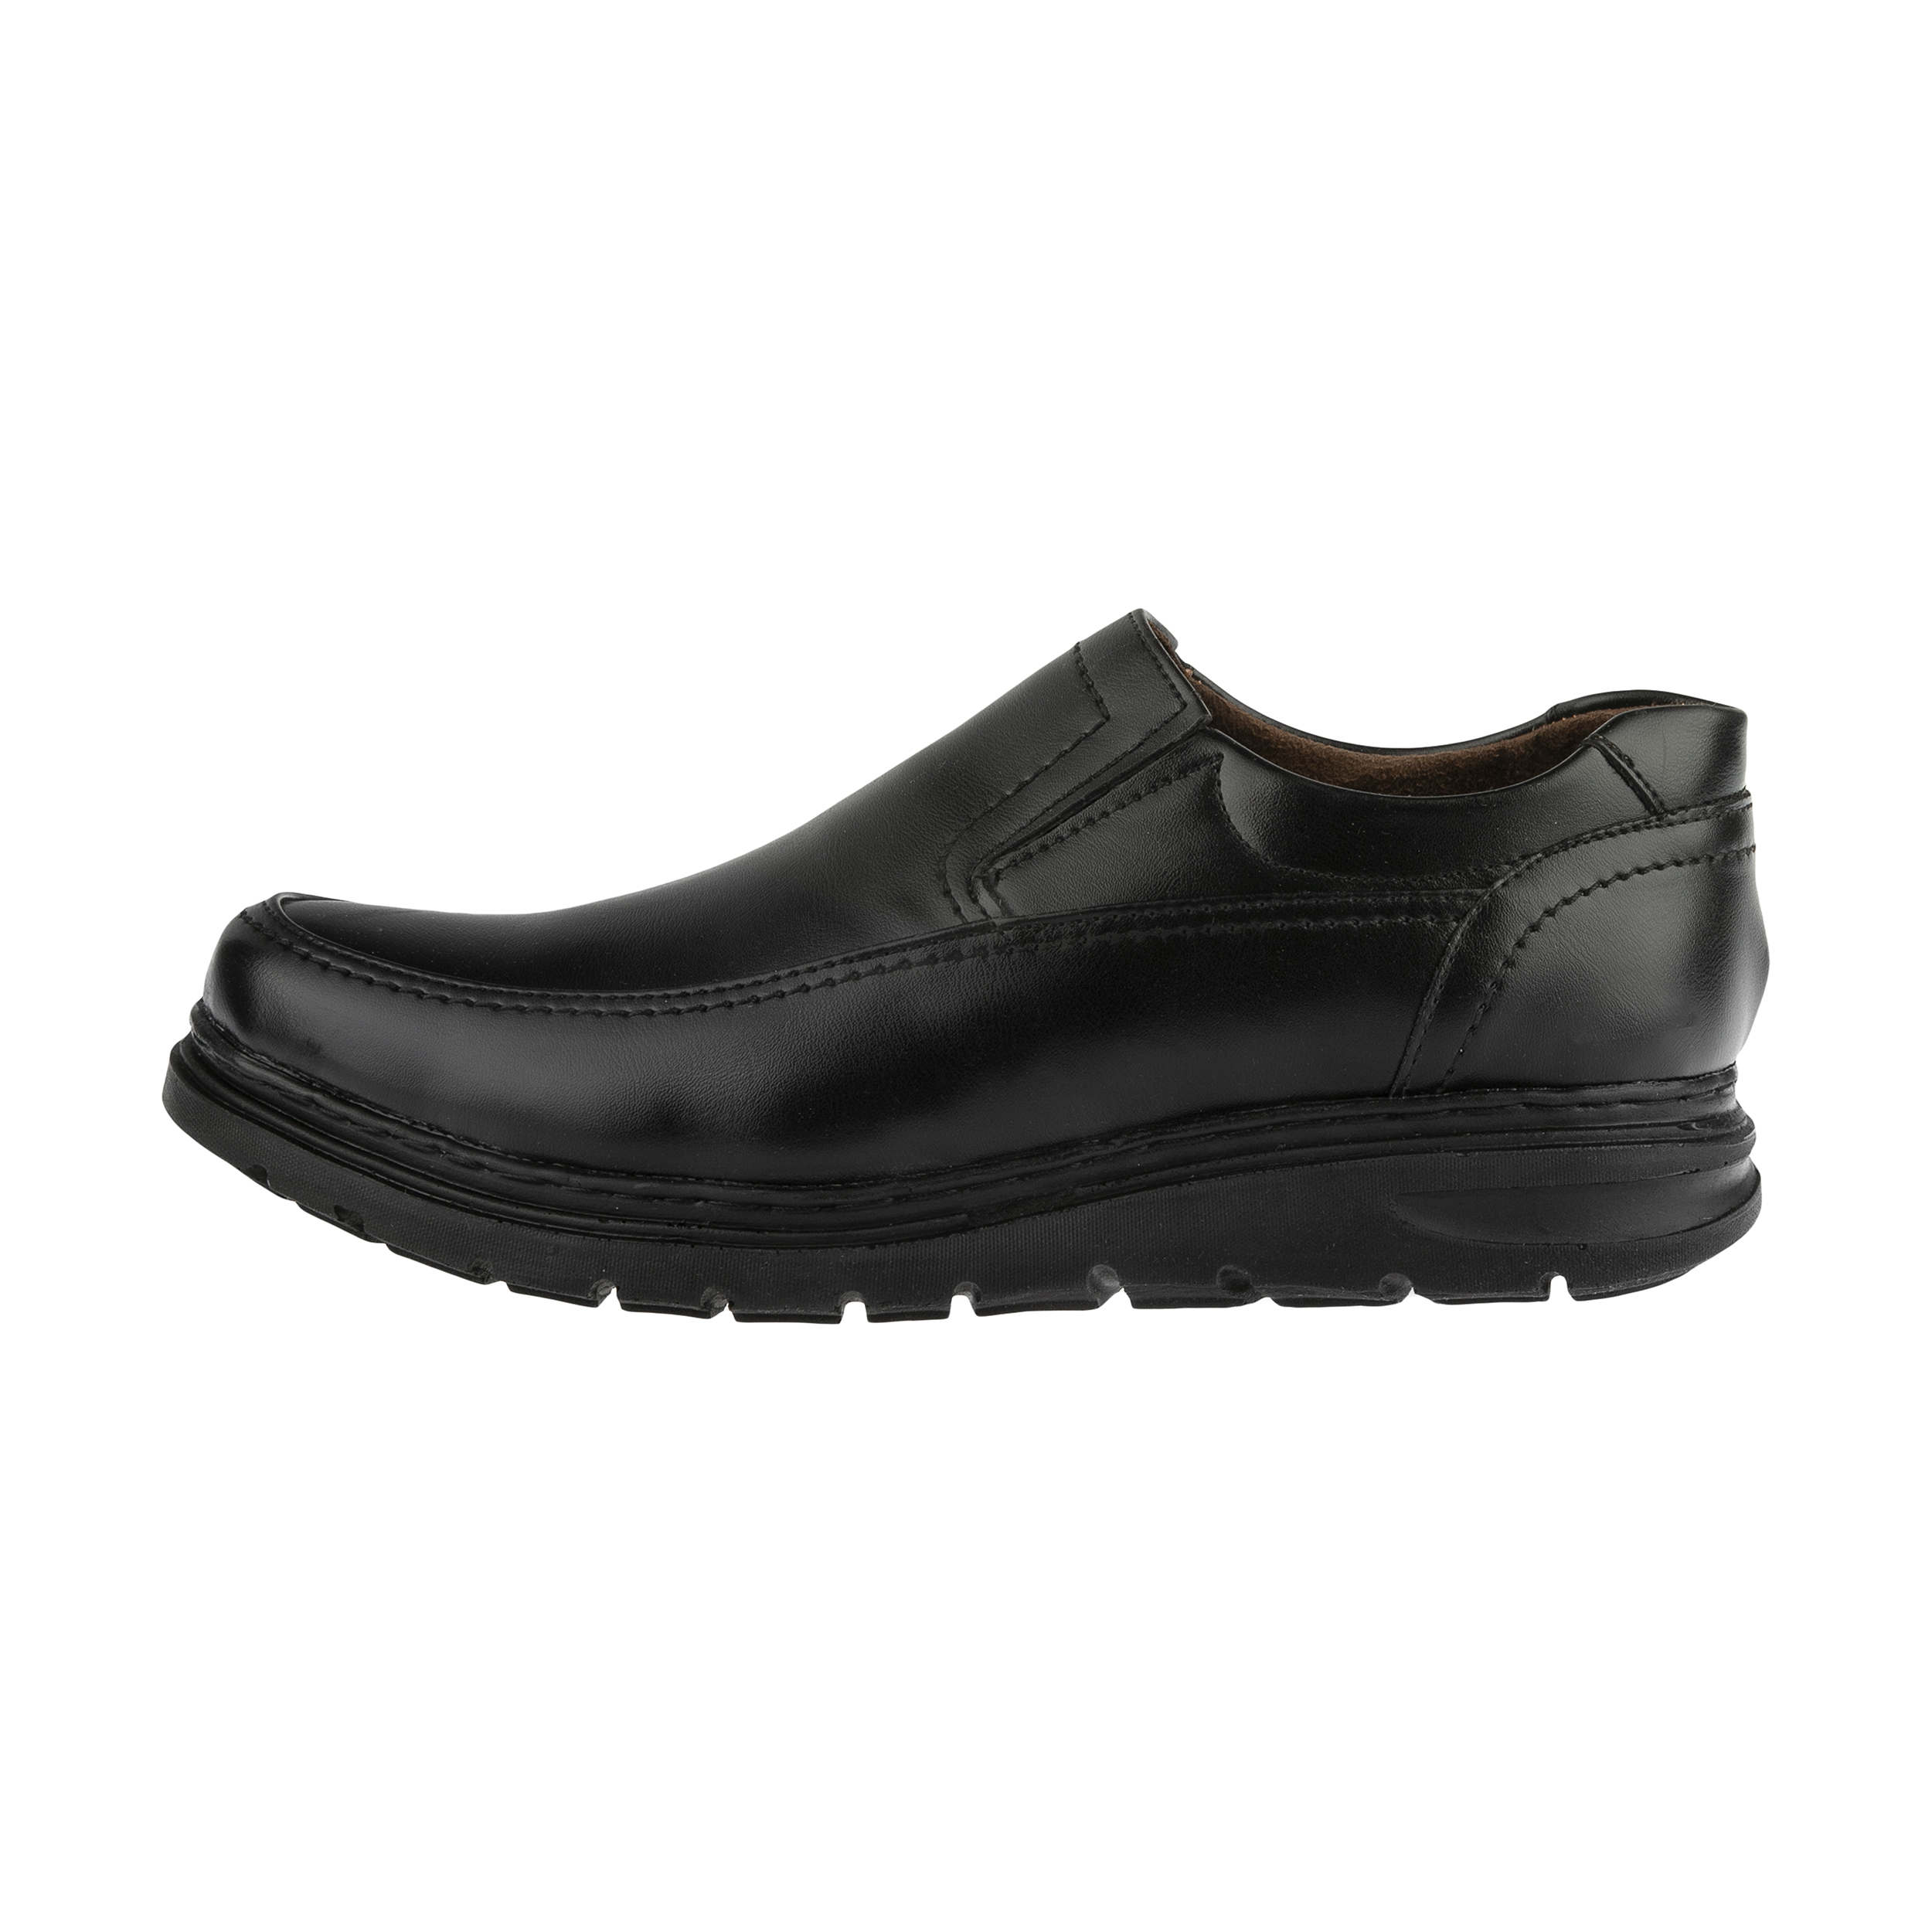 نقد و بررسی کفش روزمره مردانه اسپرت من مدل 40026-12 توسط خریداران